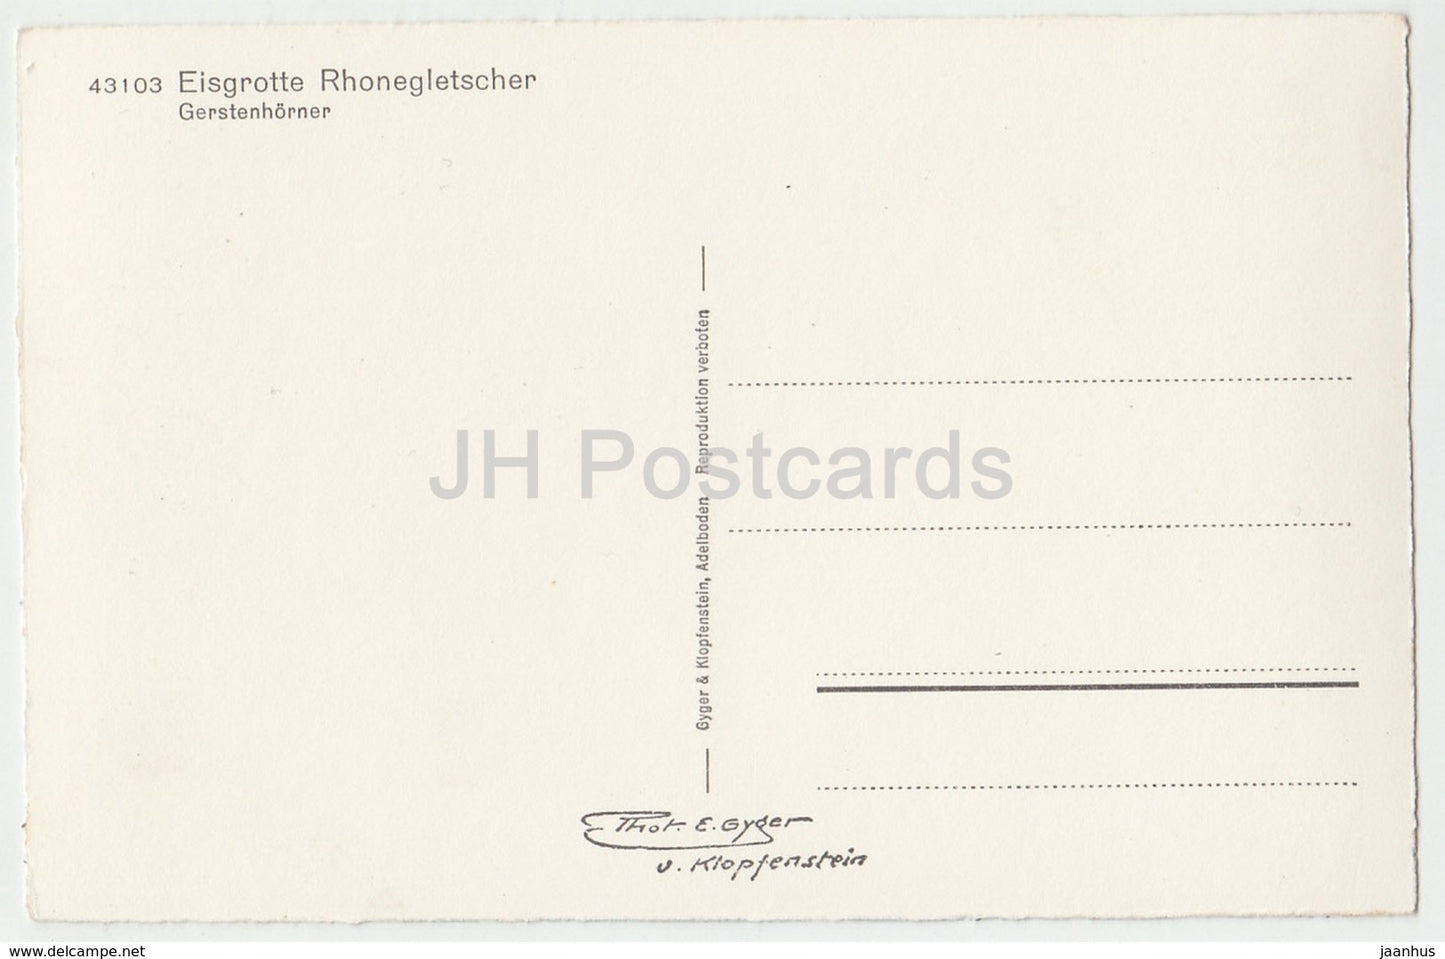 Eisgrotte Rhonegletscher - Gerstenhorner - 43103 - Switzerland - old postcard - unused